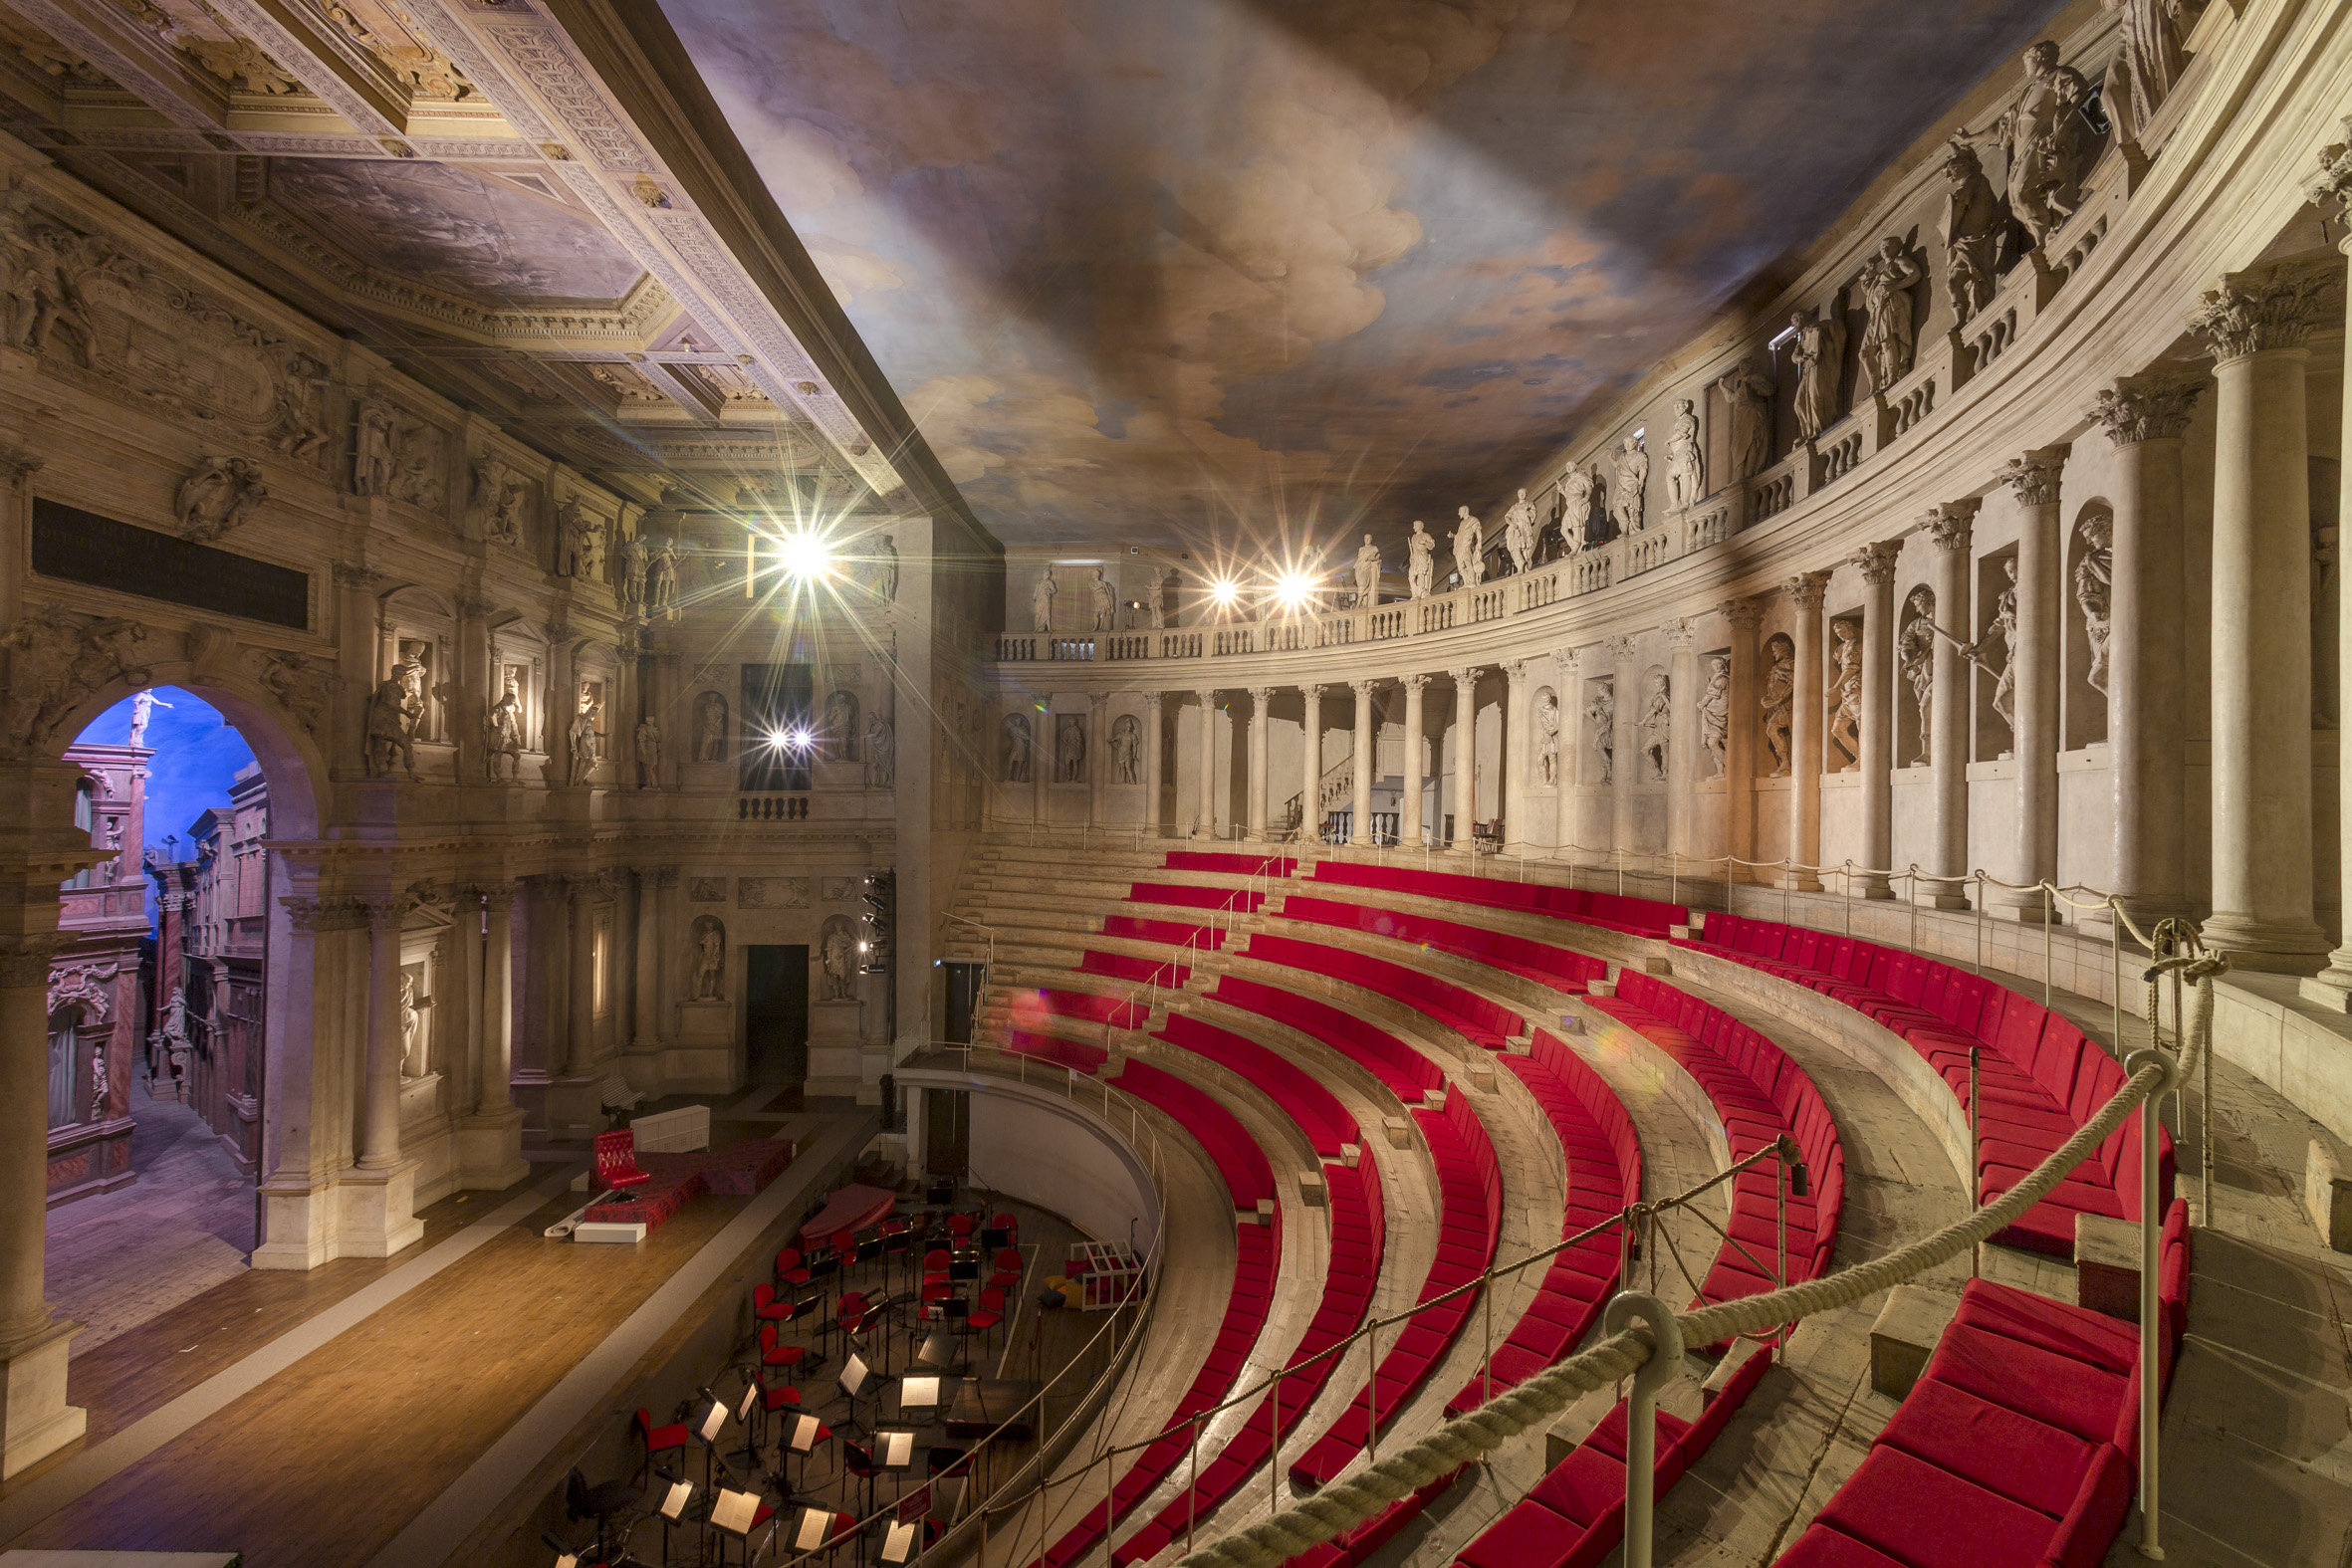 Teatro Olimpico di Vicenza